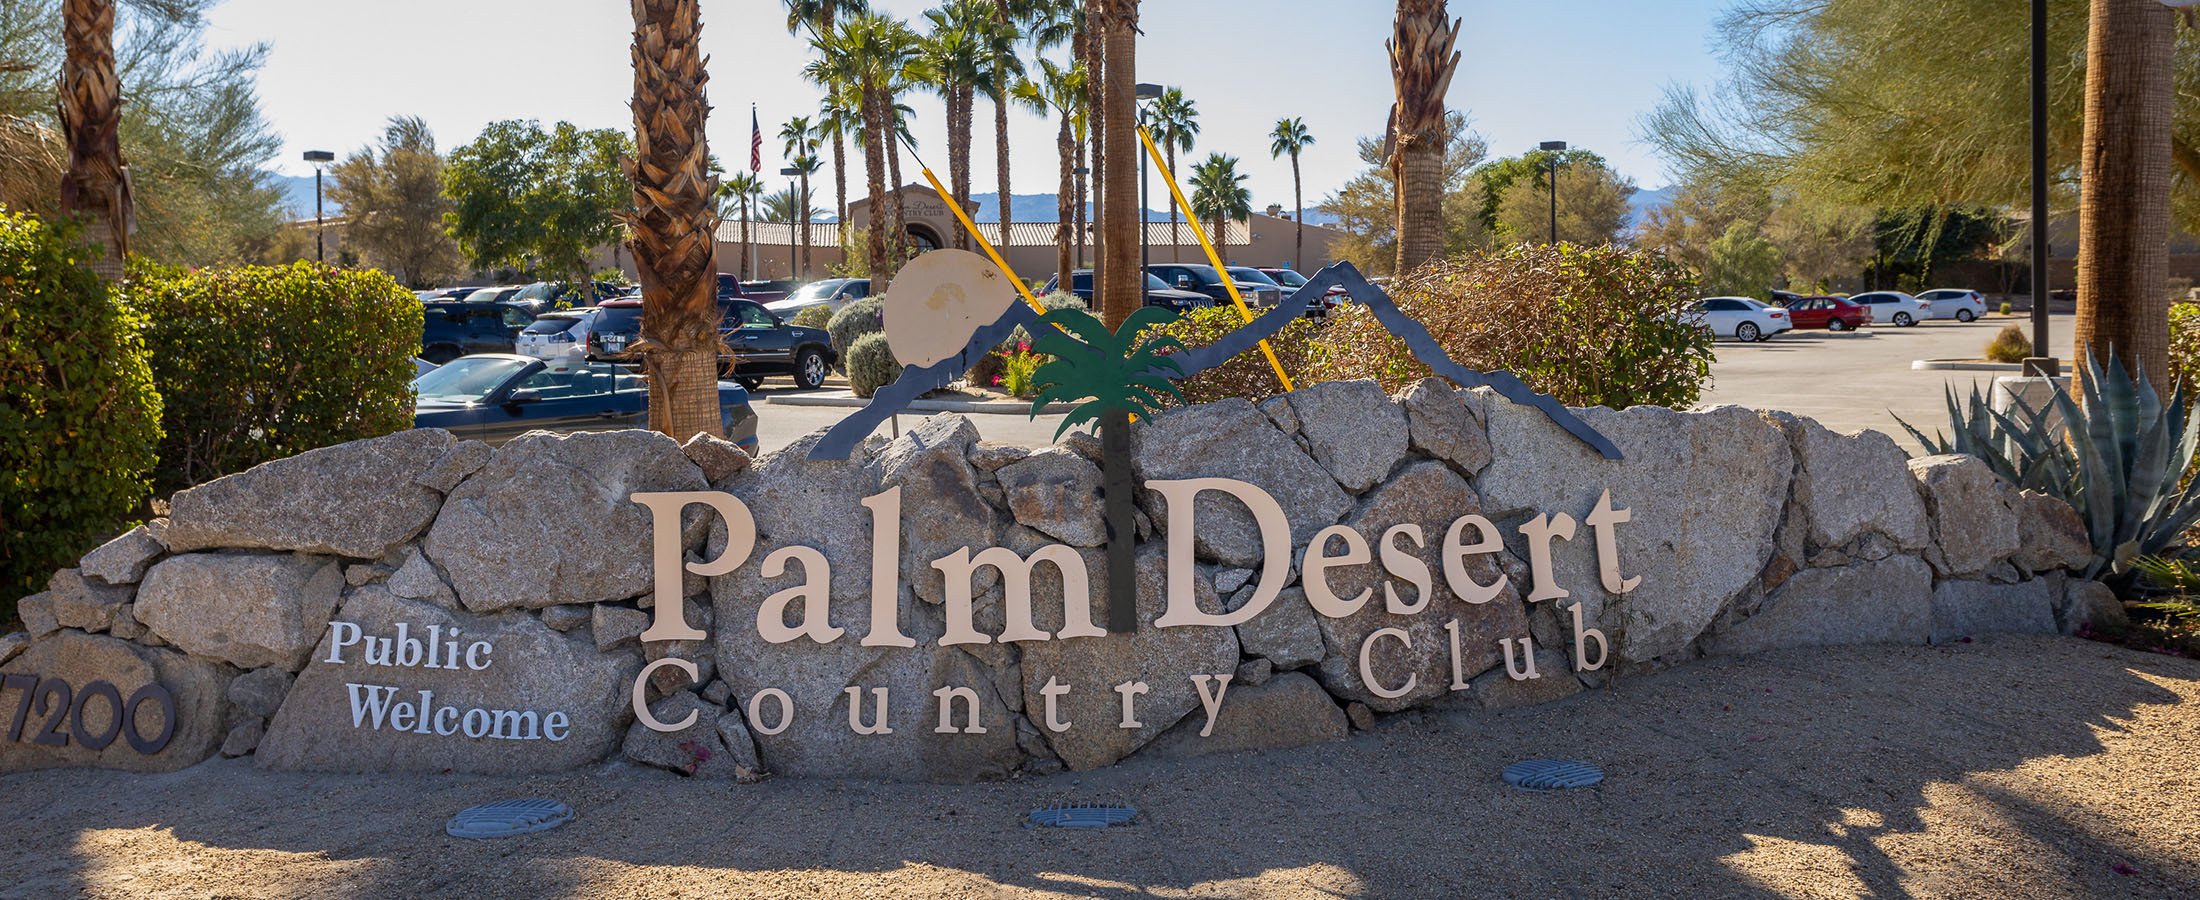 Mengenal Palm Desert Chamber of Commerce